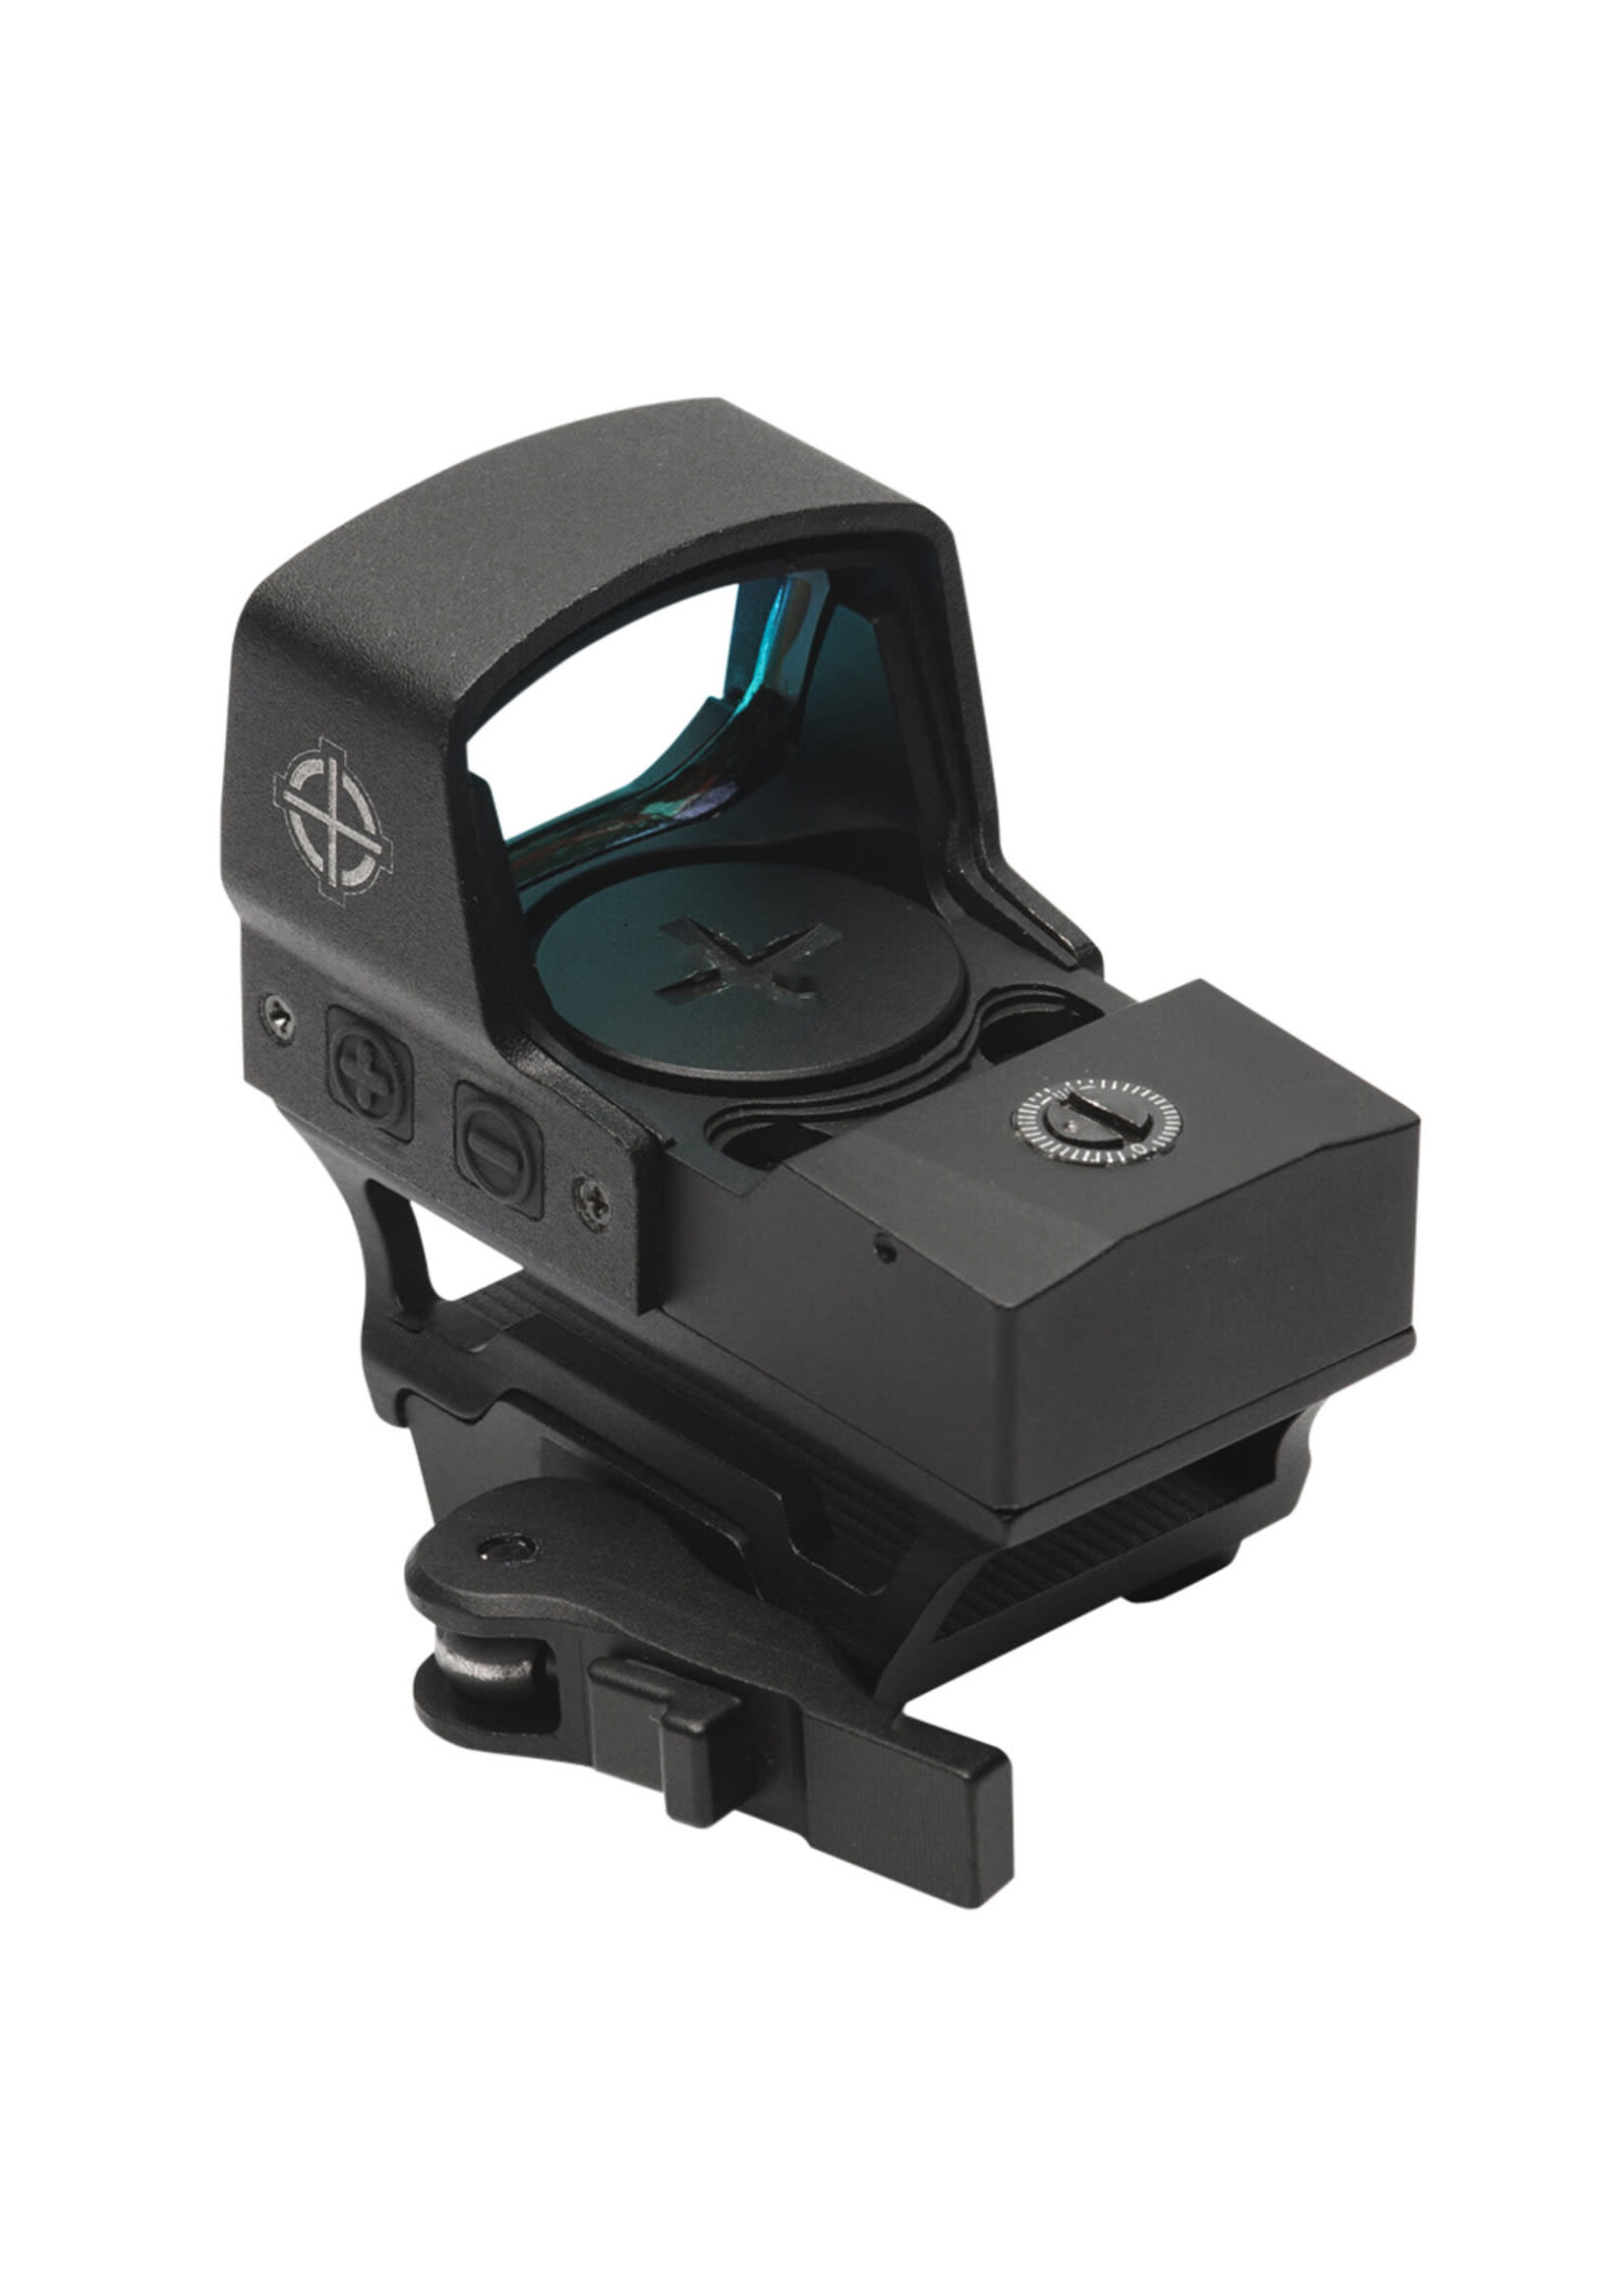 Sightmark Sightmark SM26018 Core Shot Compact Reflex Sight, A-Spec LQD Matte Black 28mm x 18mm 5 MOA Red Dot Reticle